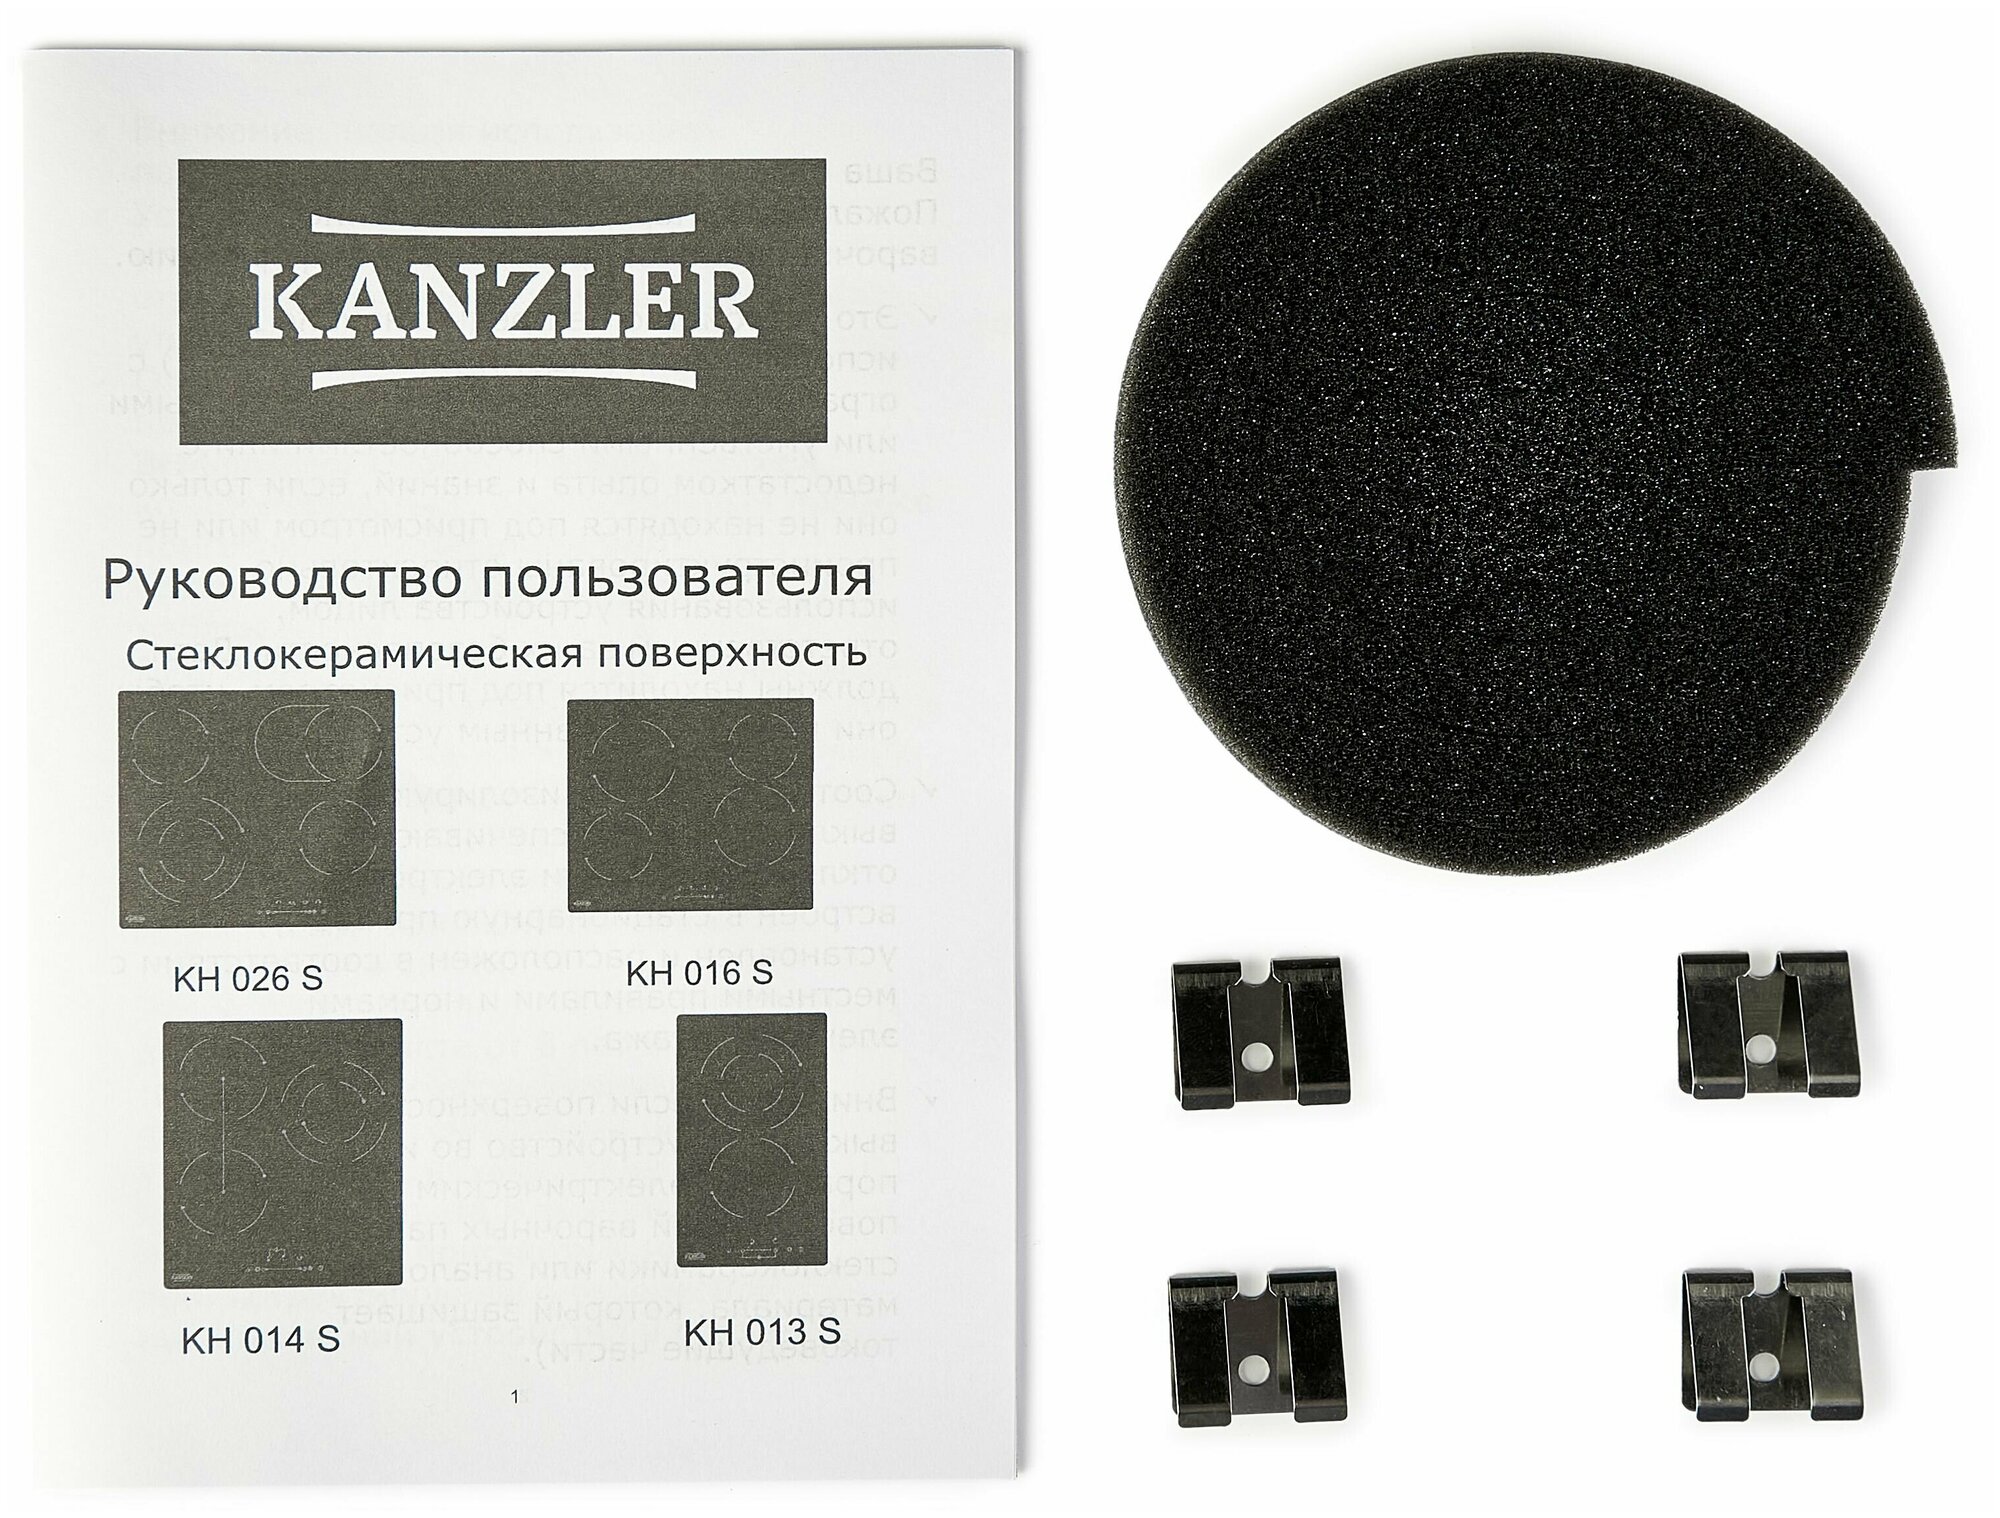 Электрическая стеклокерамическая встраиваемая варочная панель на 4 конфорки Kanzler KH 026 S, черная, 5 800 Вт - фотография № 4